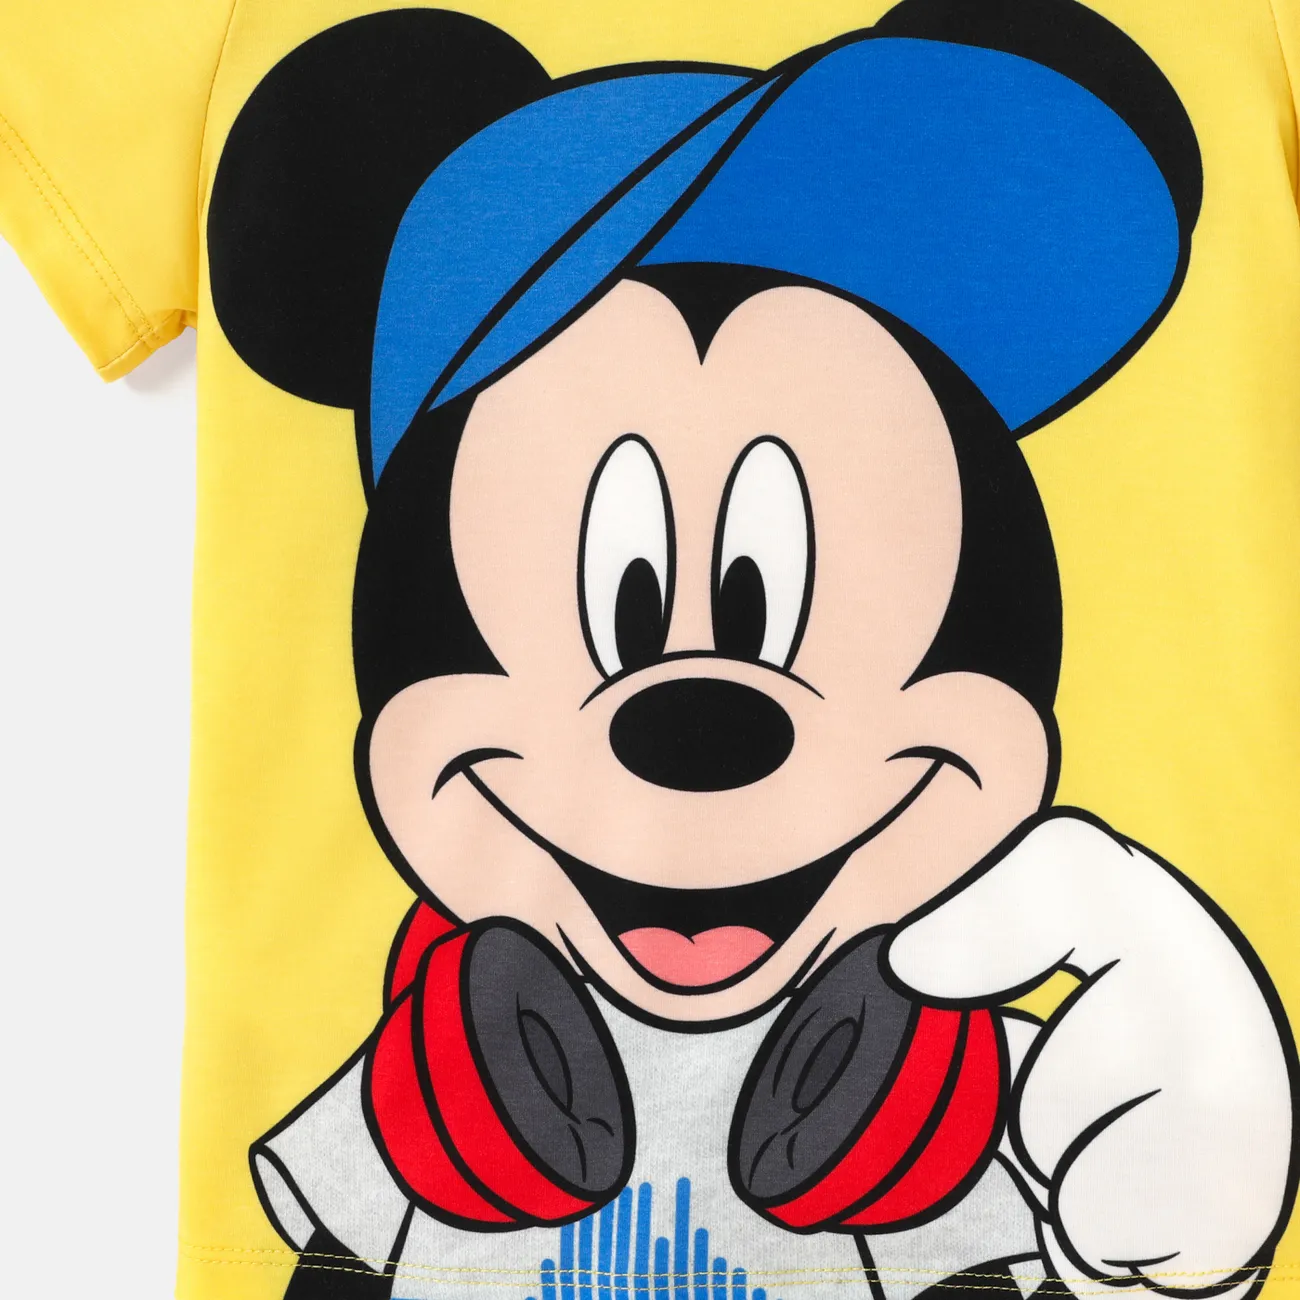 Disney Kleinkinder/Kind Mädchen/Junge Figur Print Naia™ Kurzarm-T-Shirt gelb big image 1